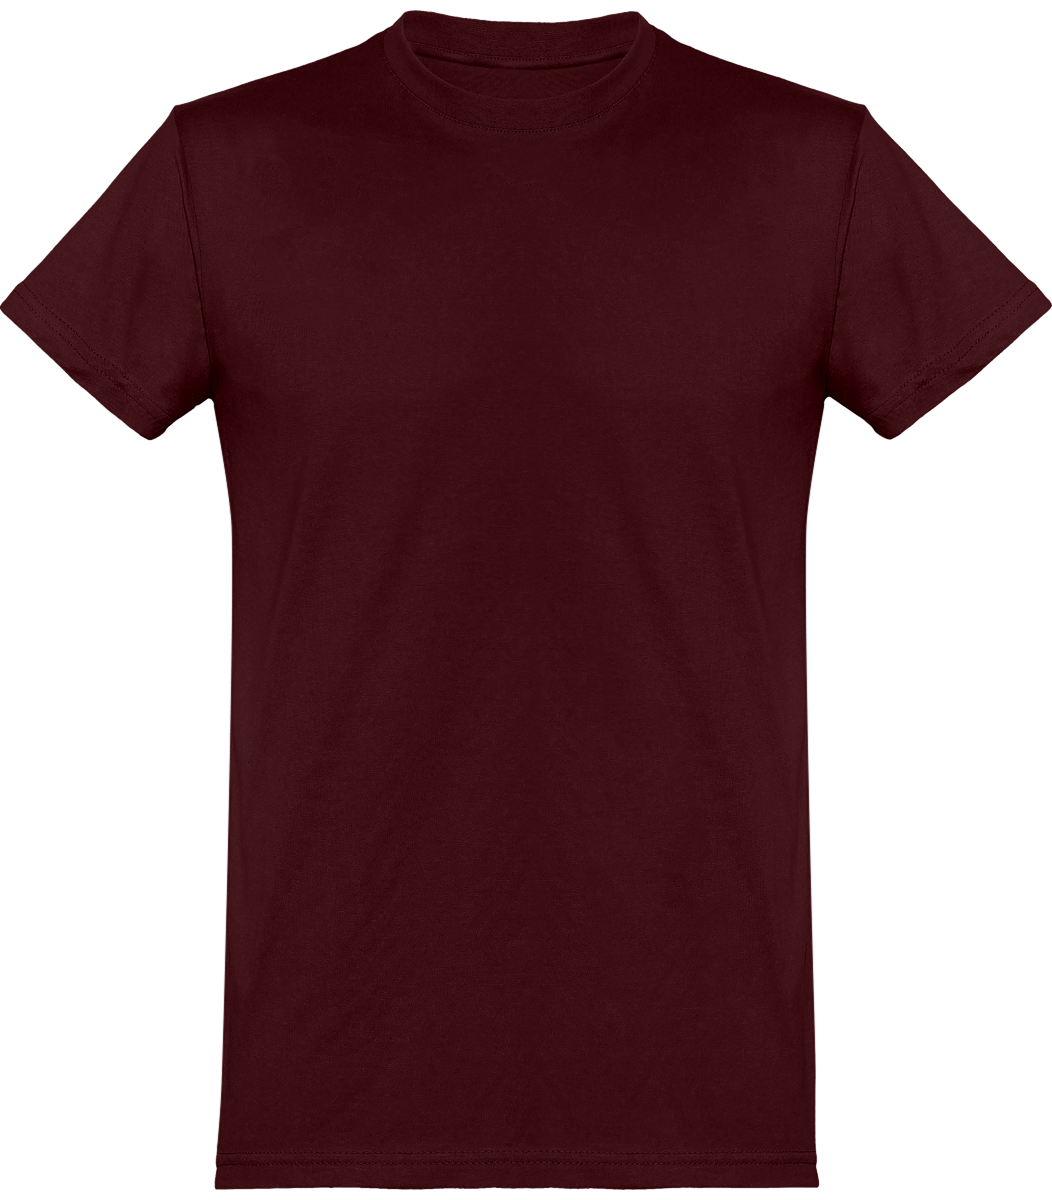 Tee-Shirt Homme Coupe Basique 100% Coton À Personnaliser Burgundy